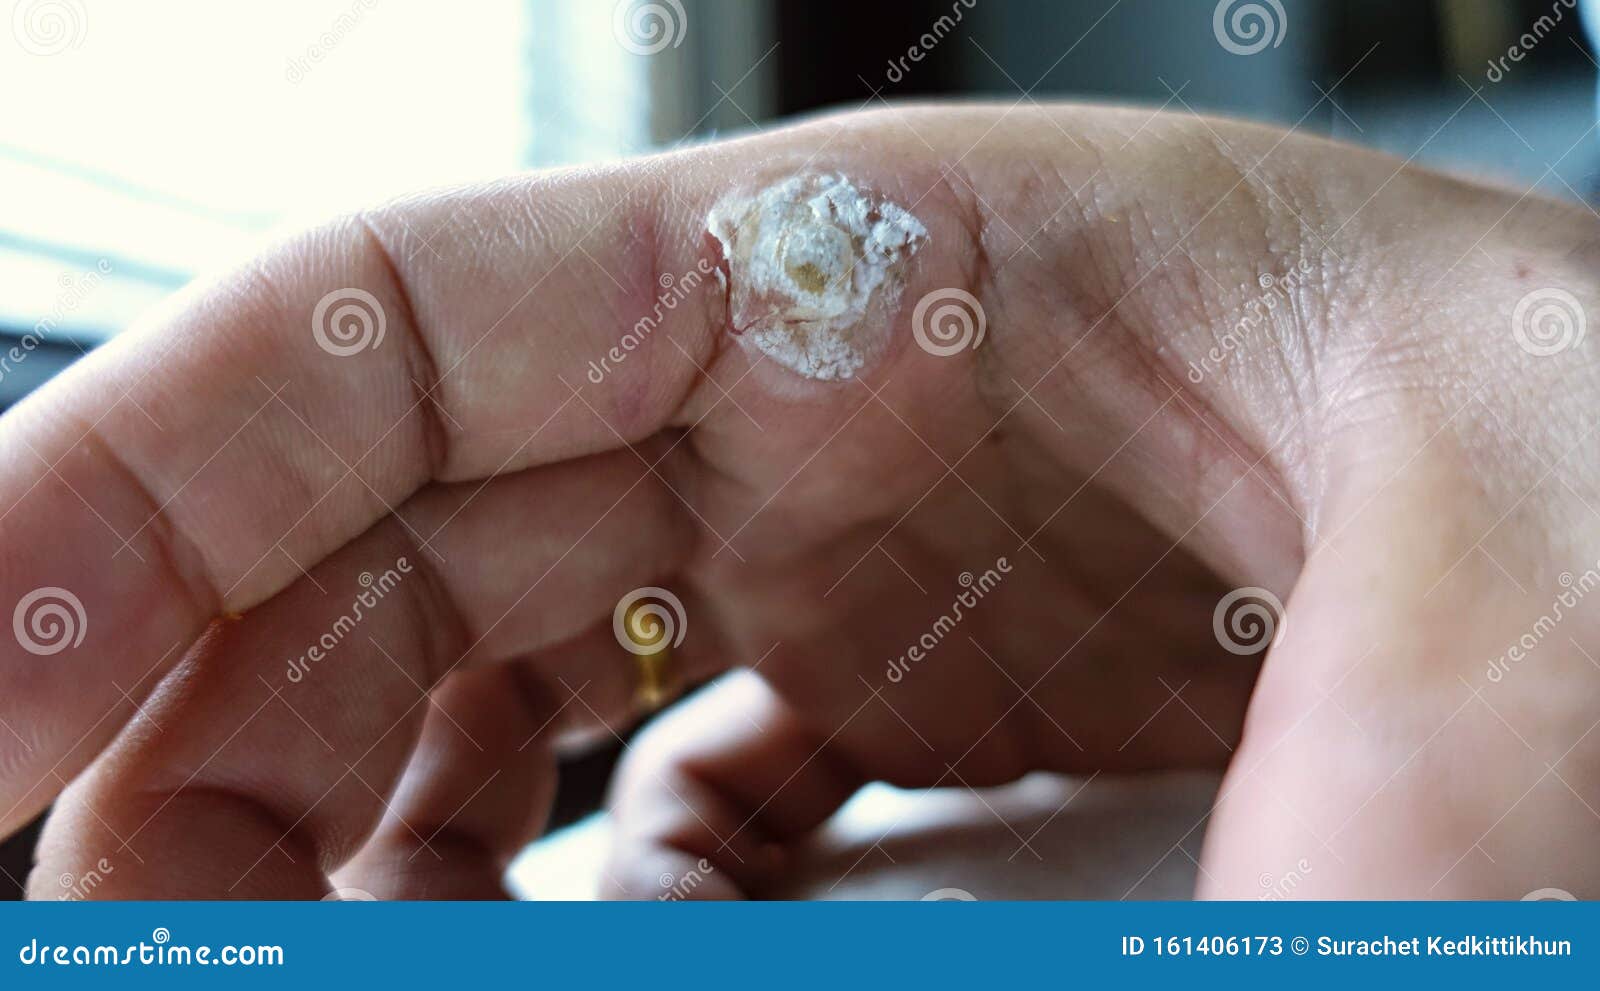 wart treatment finger)